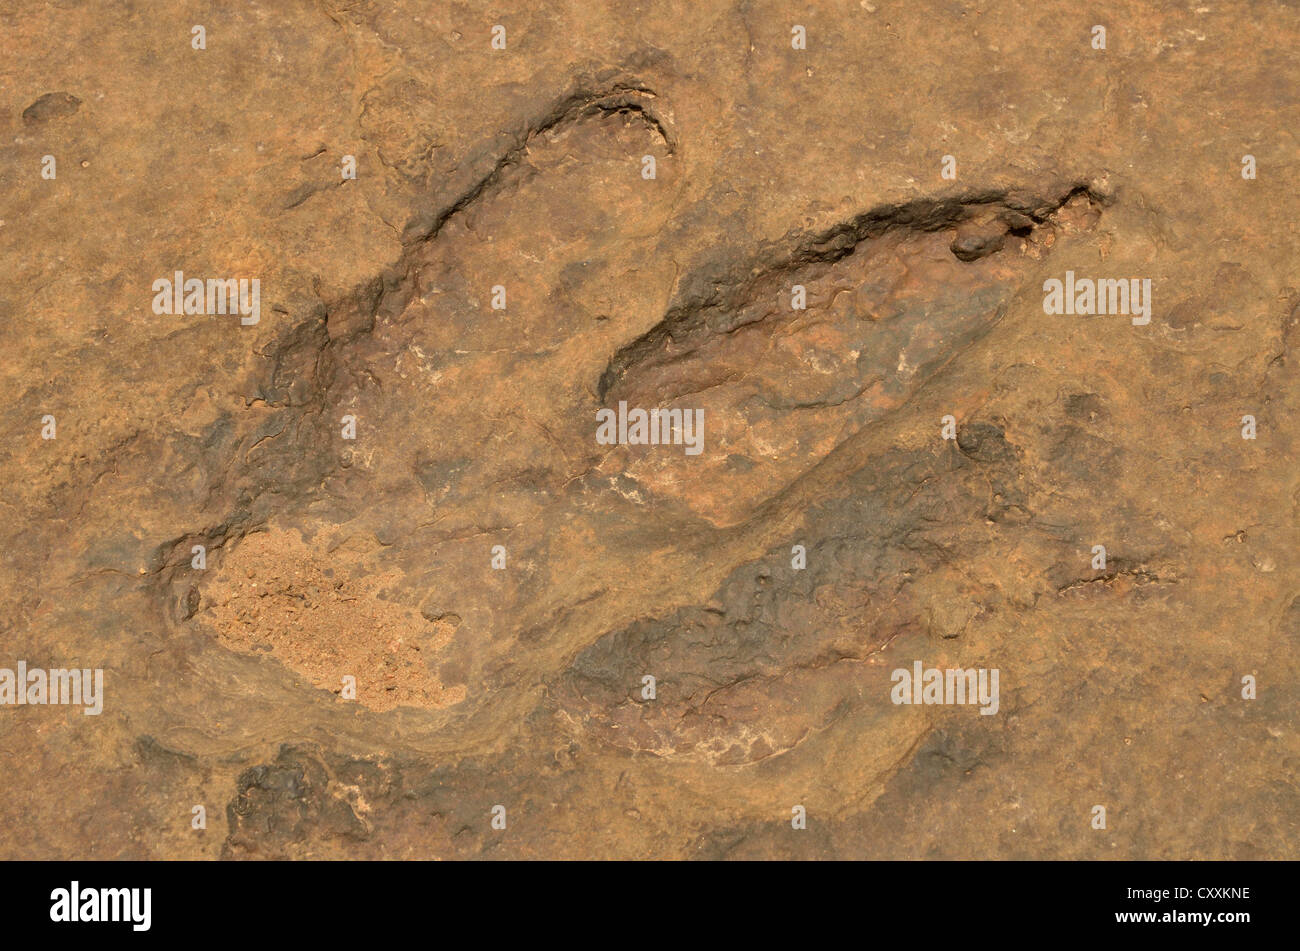 Huellas fosilizadas de un Tyrannosaurus rex, cerca de la aldea de Mananga, Camerún, África Central, África Foto de stock